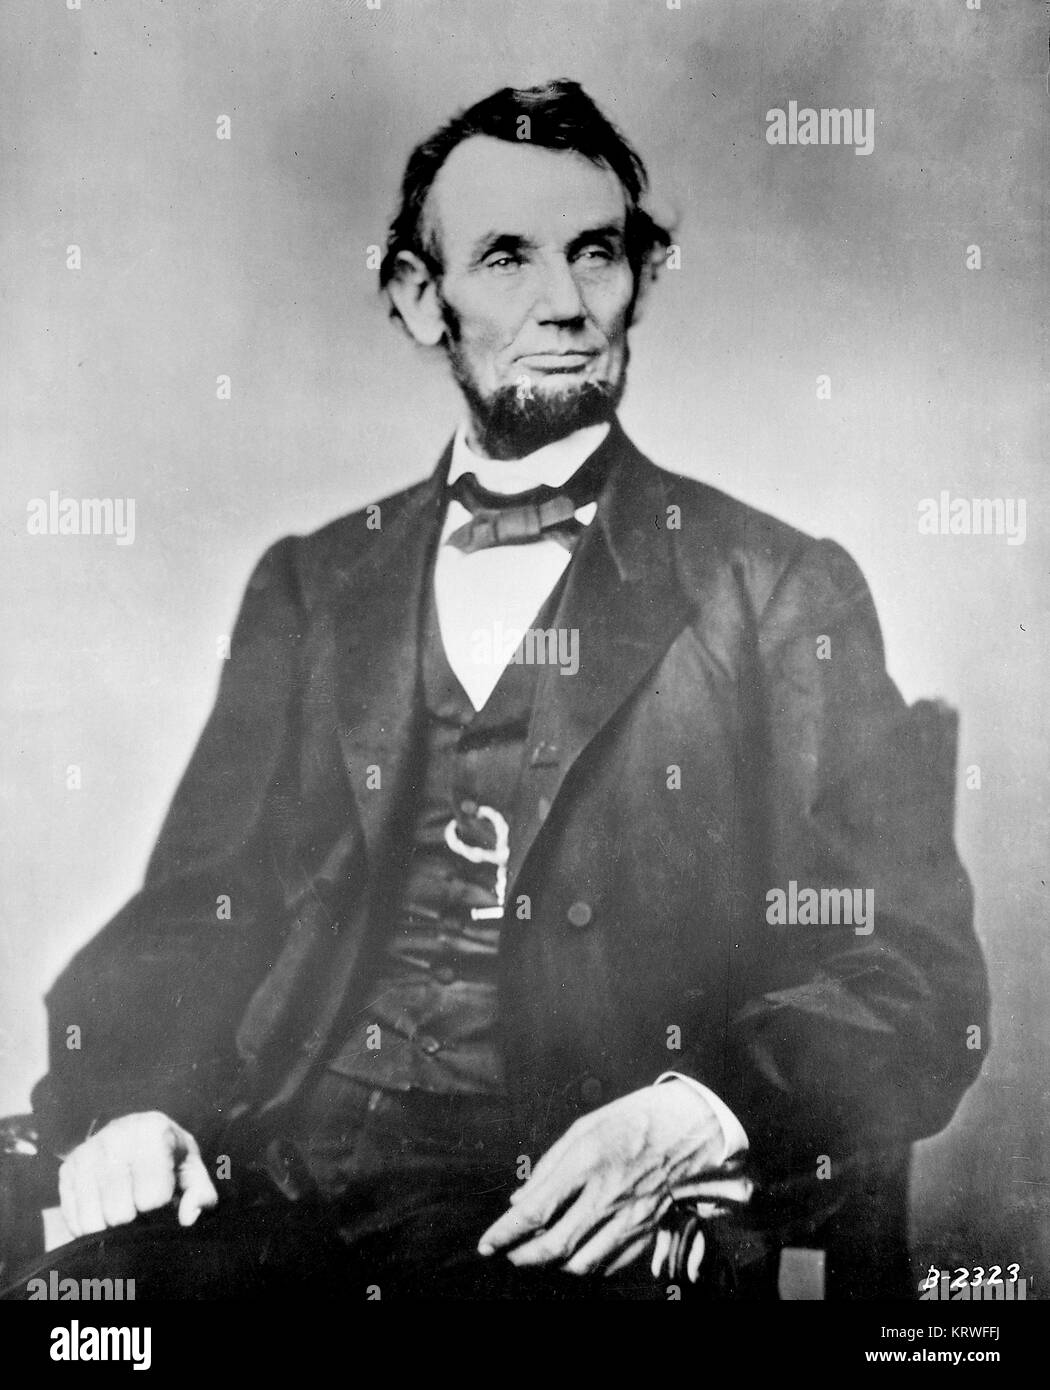 Utilisez uniquement rédactionnel - Matthew Brady photo du président Abraham Lincoln assis 1861-1865 Banque D'Images